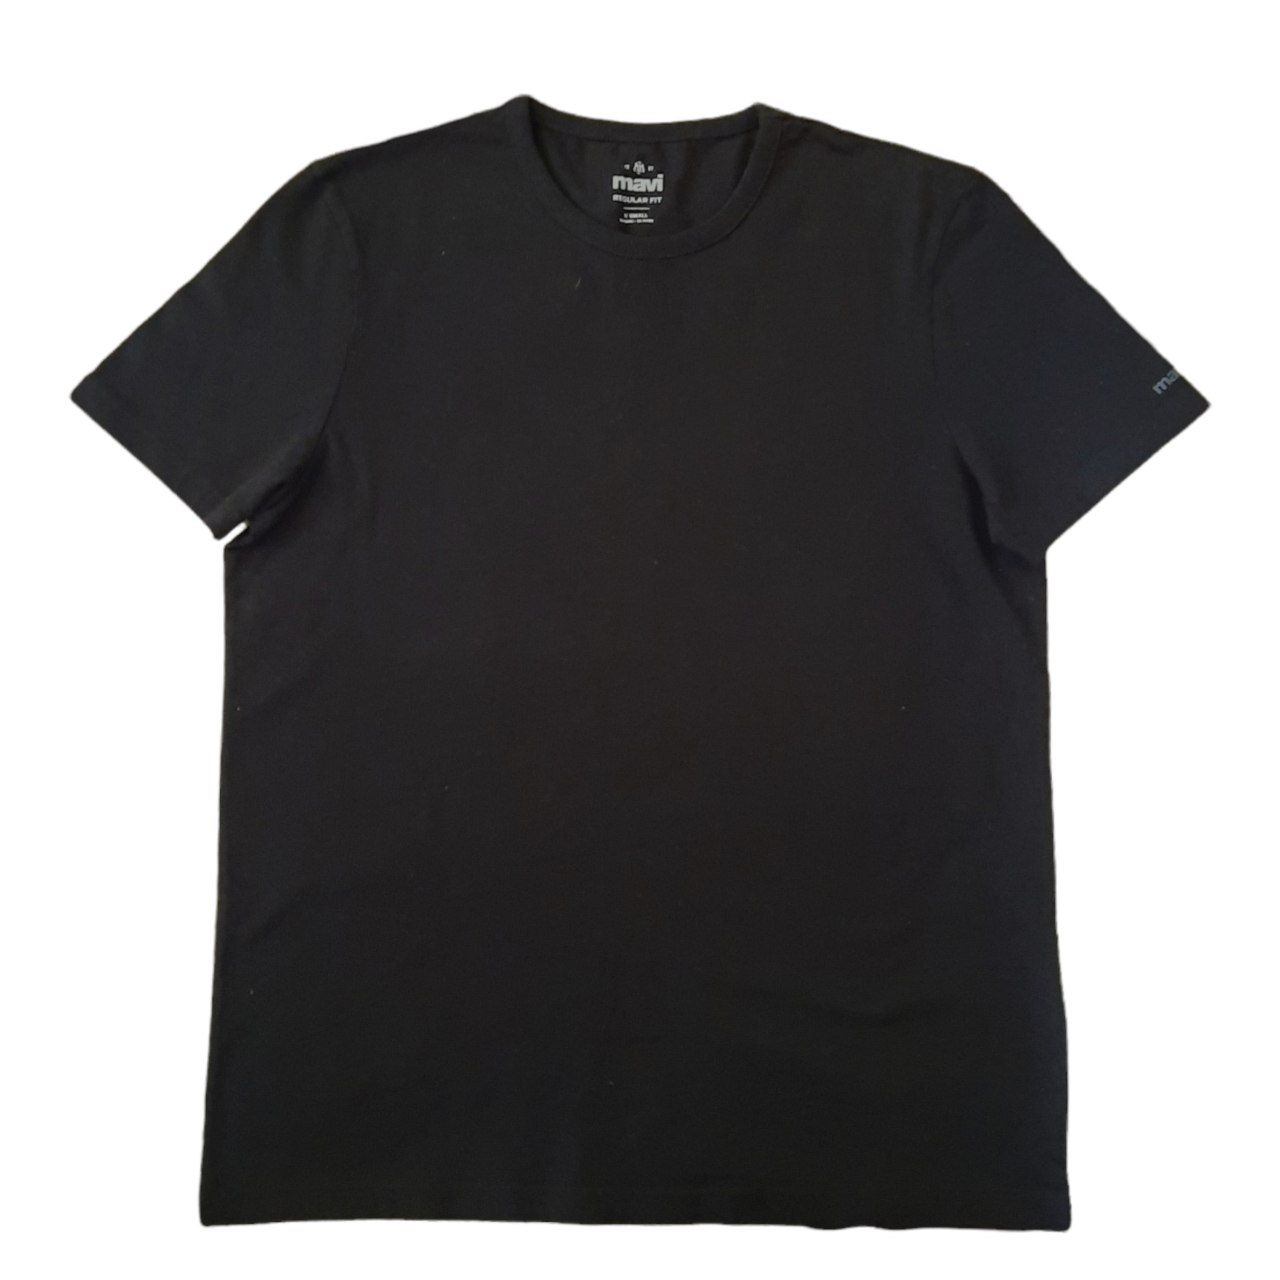 تی شرت آستین کوتاه مردانه ماوی مدل m66 -  - 1